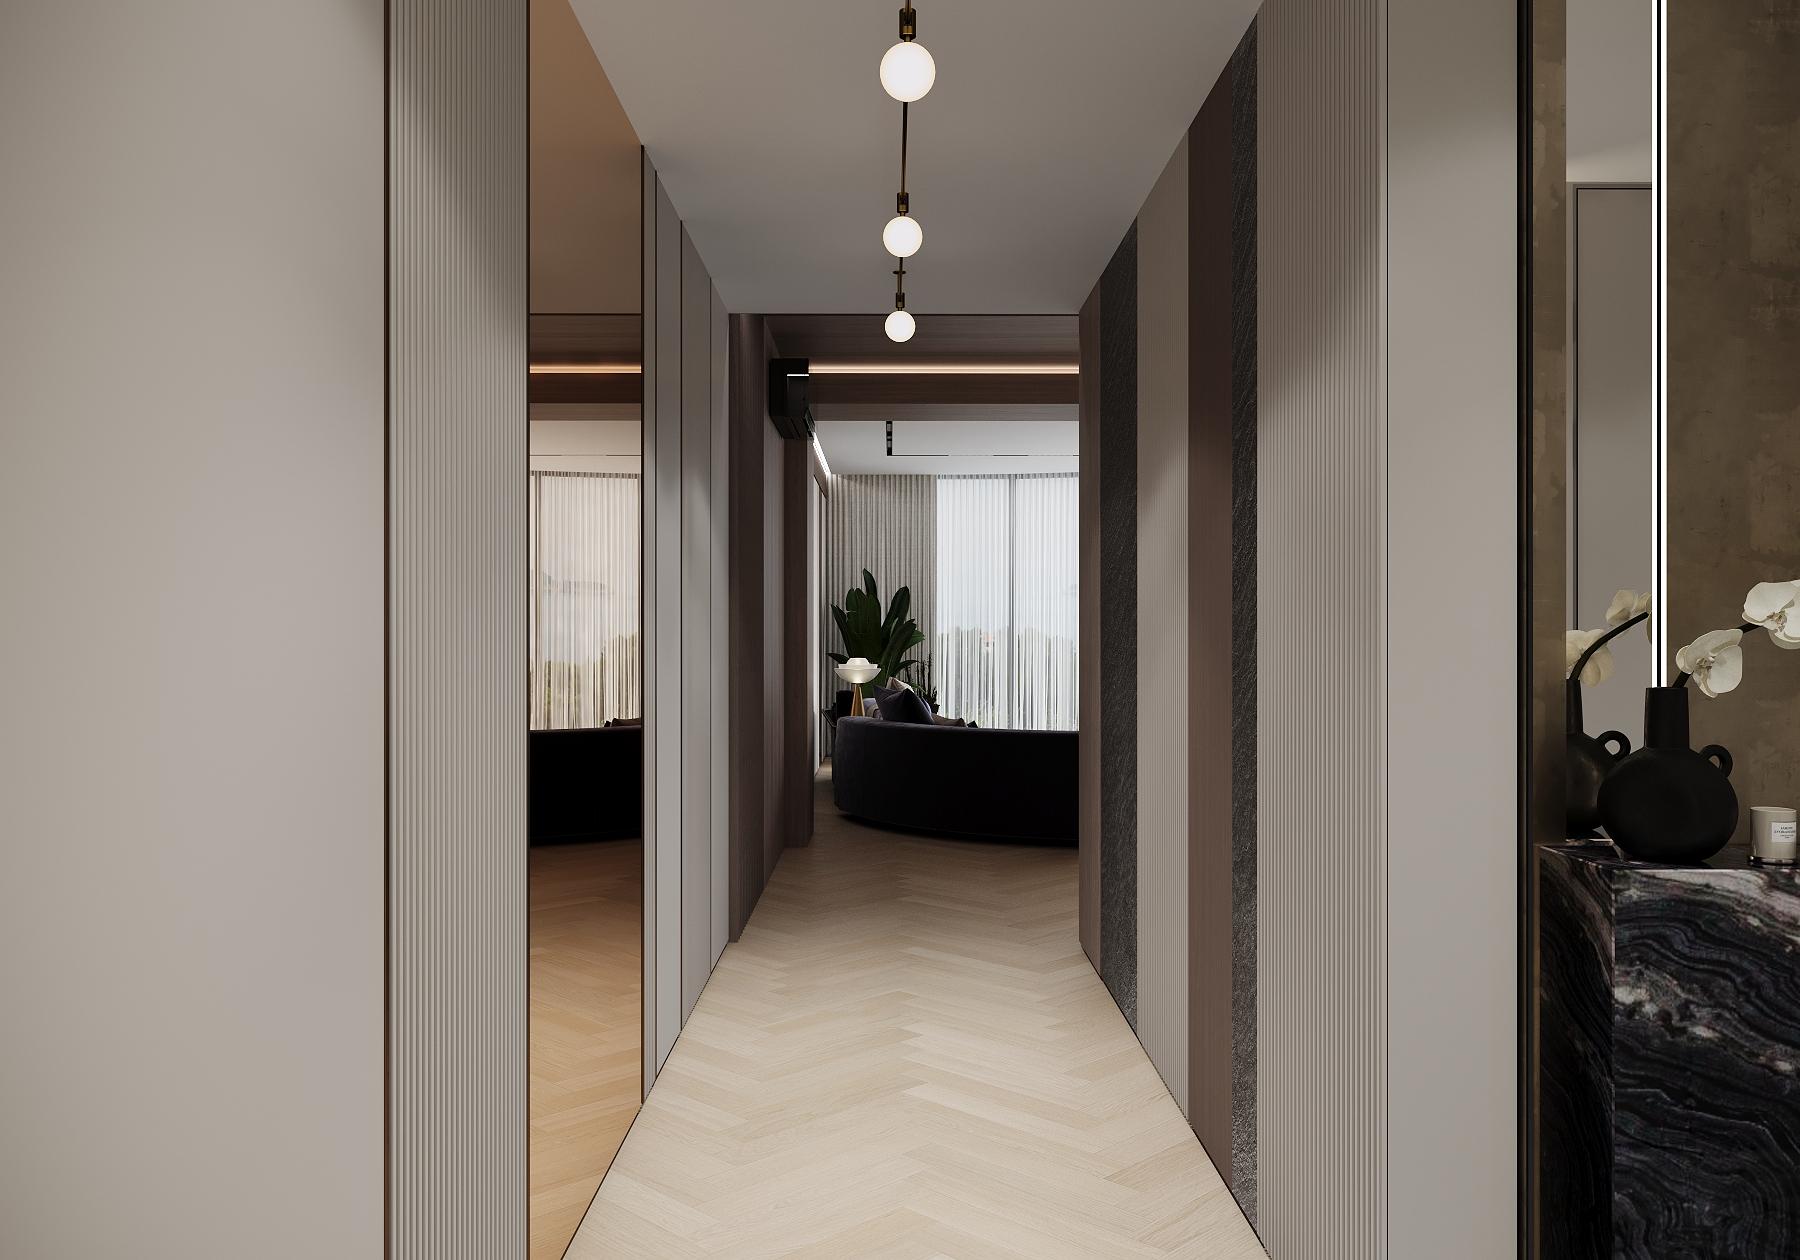 Интерьер коридора с рейками с подсветкой, подсветкой настенной, подсветкой светодиодной, светильниками над кроватью и с подсветкой